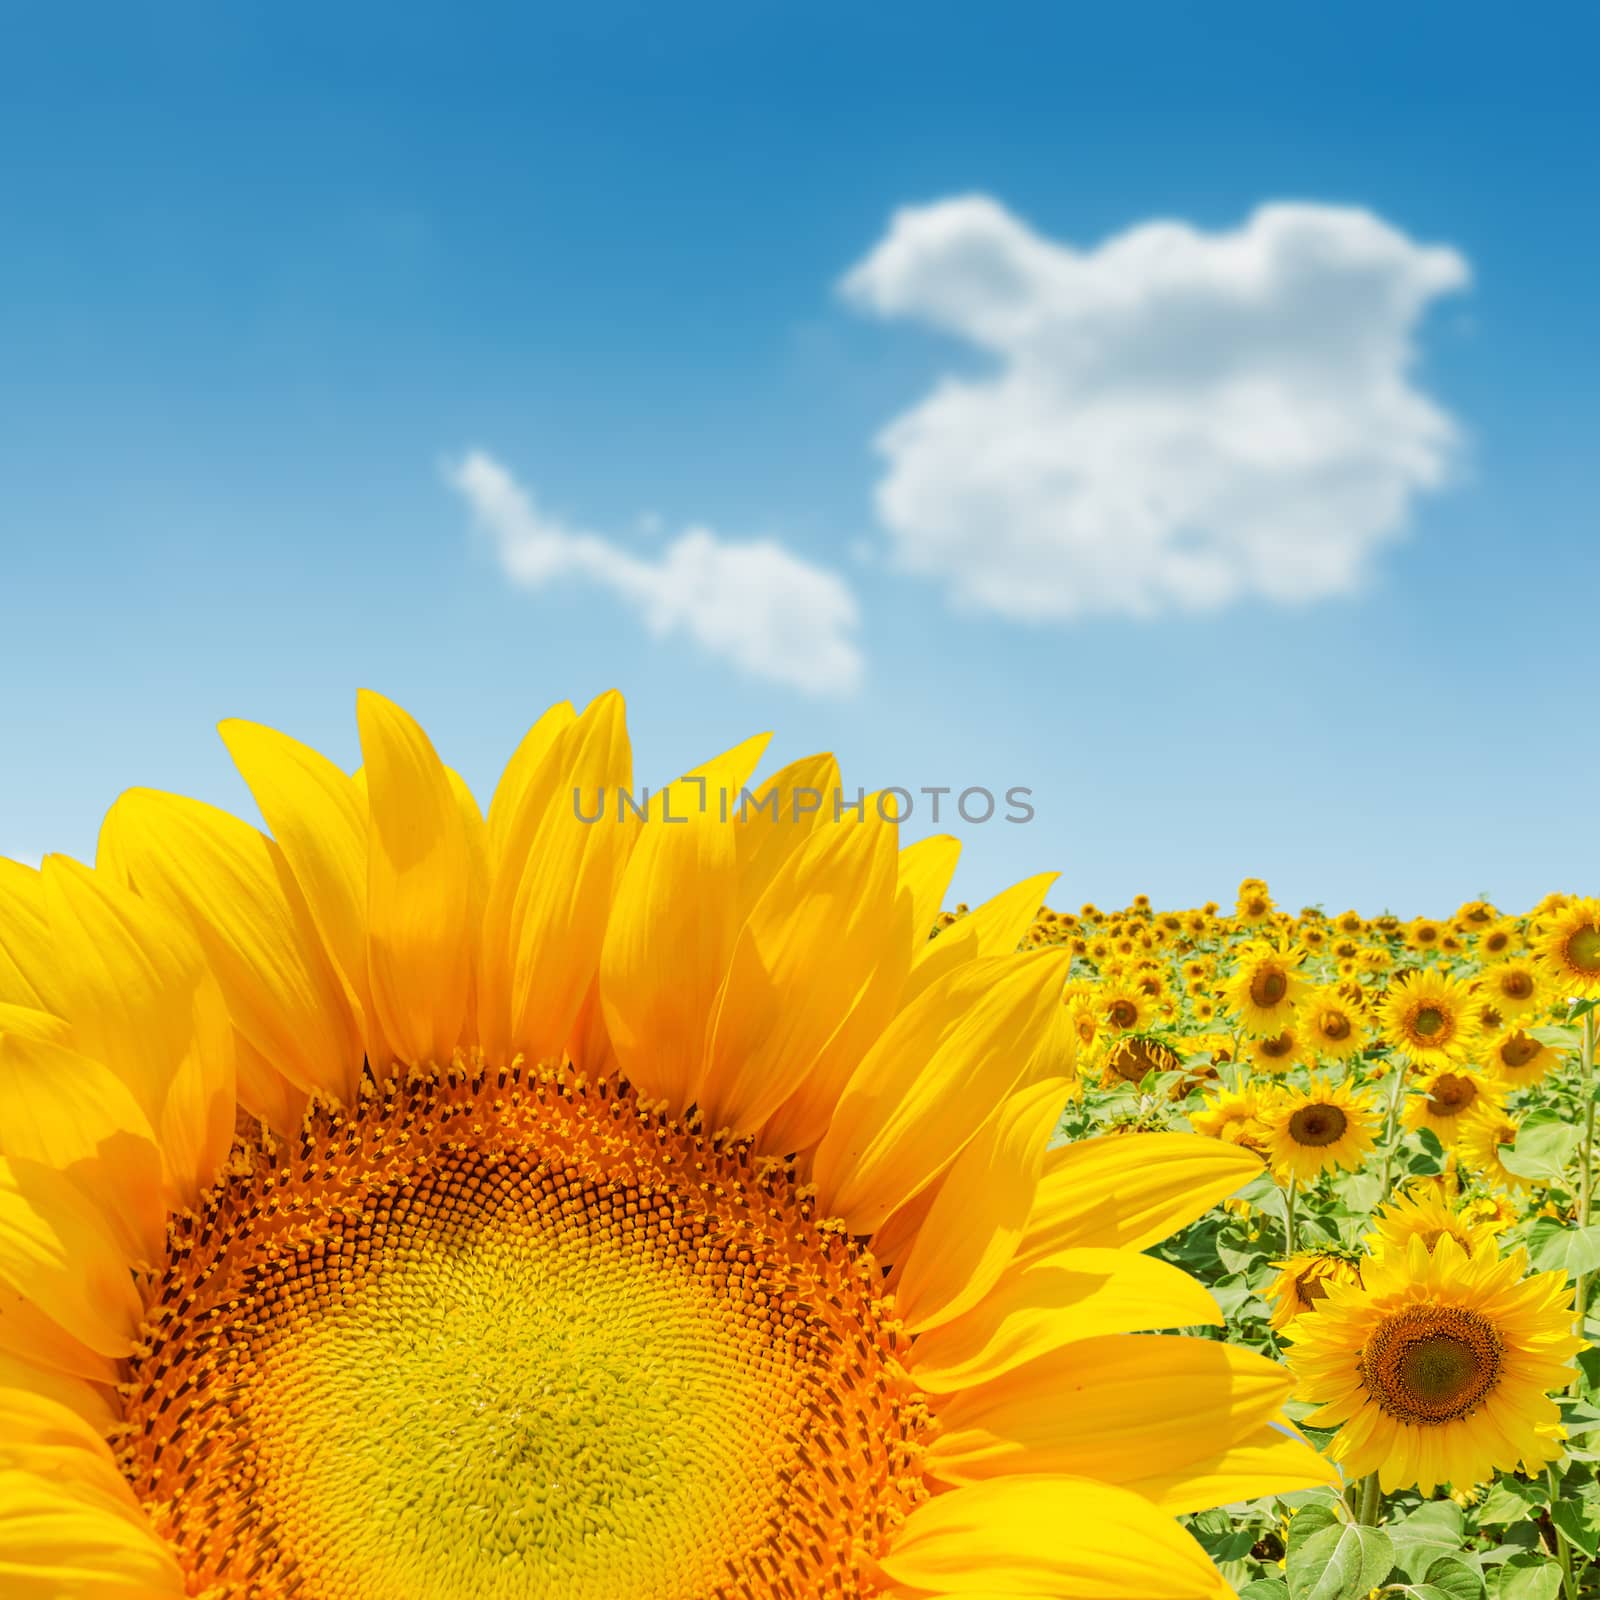 sunflower closeup on field. soft focus